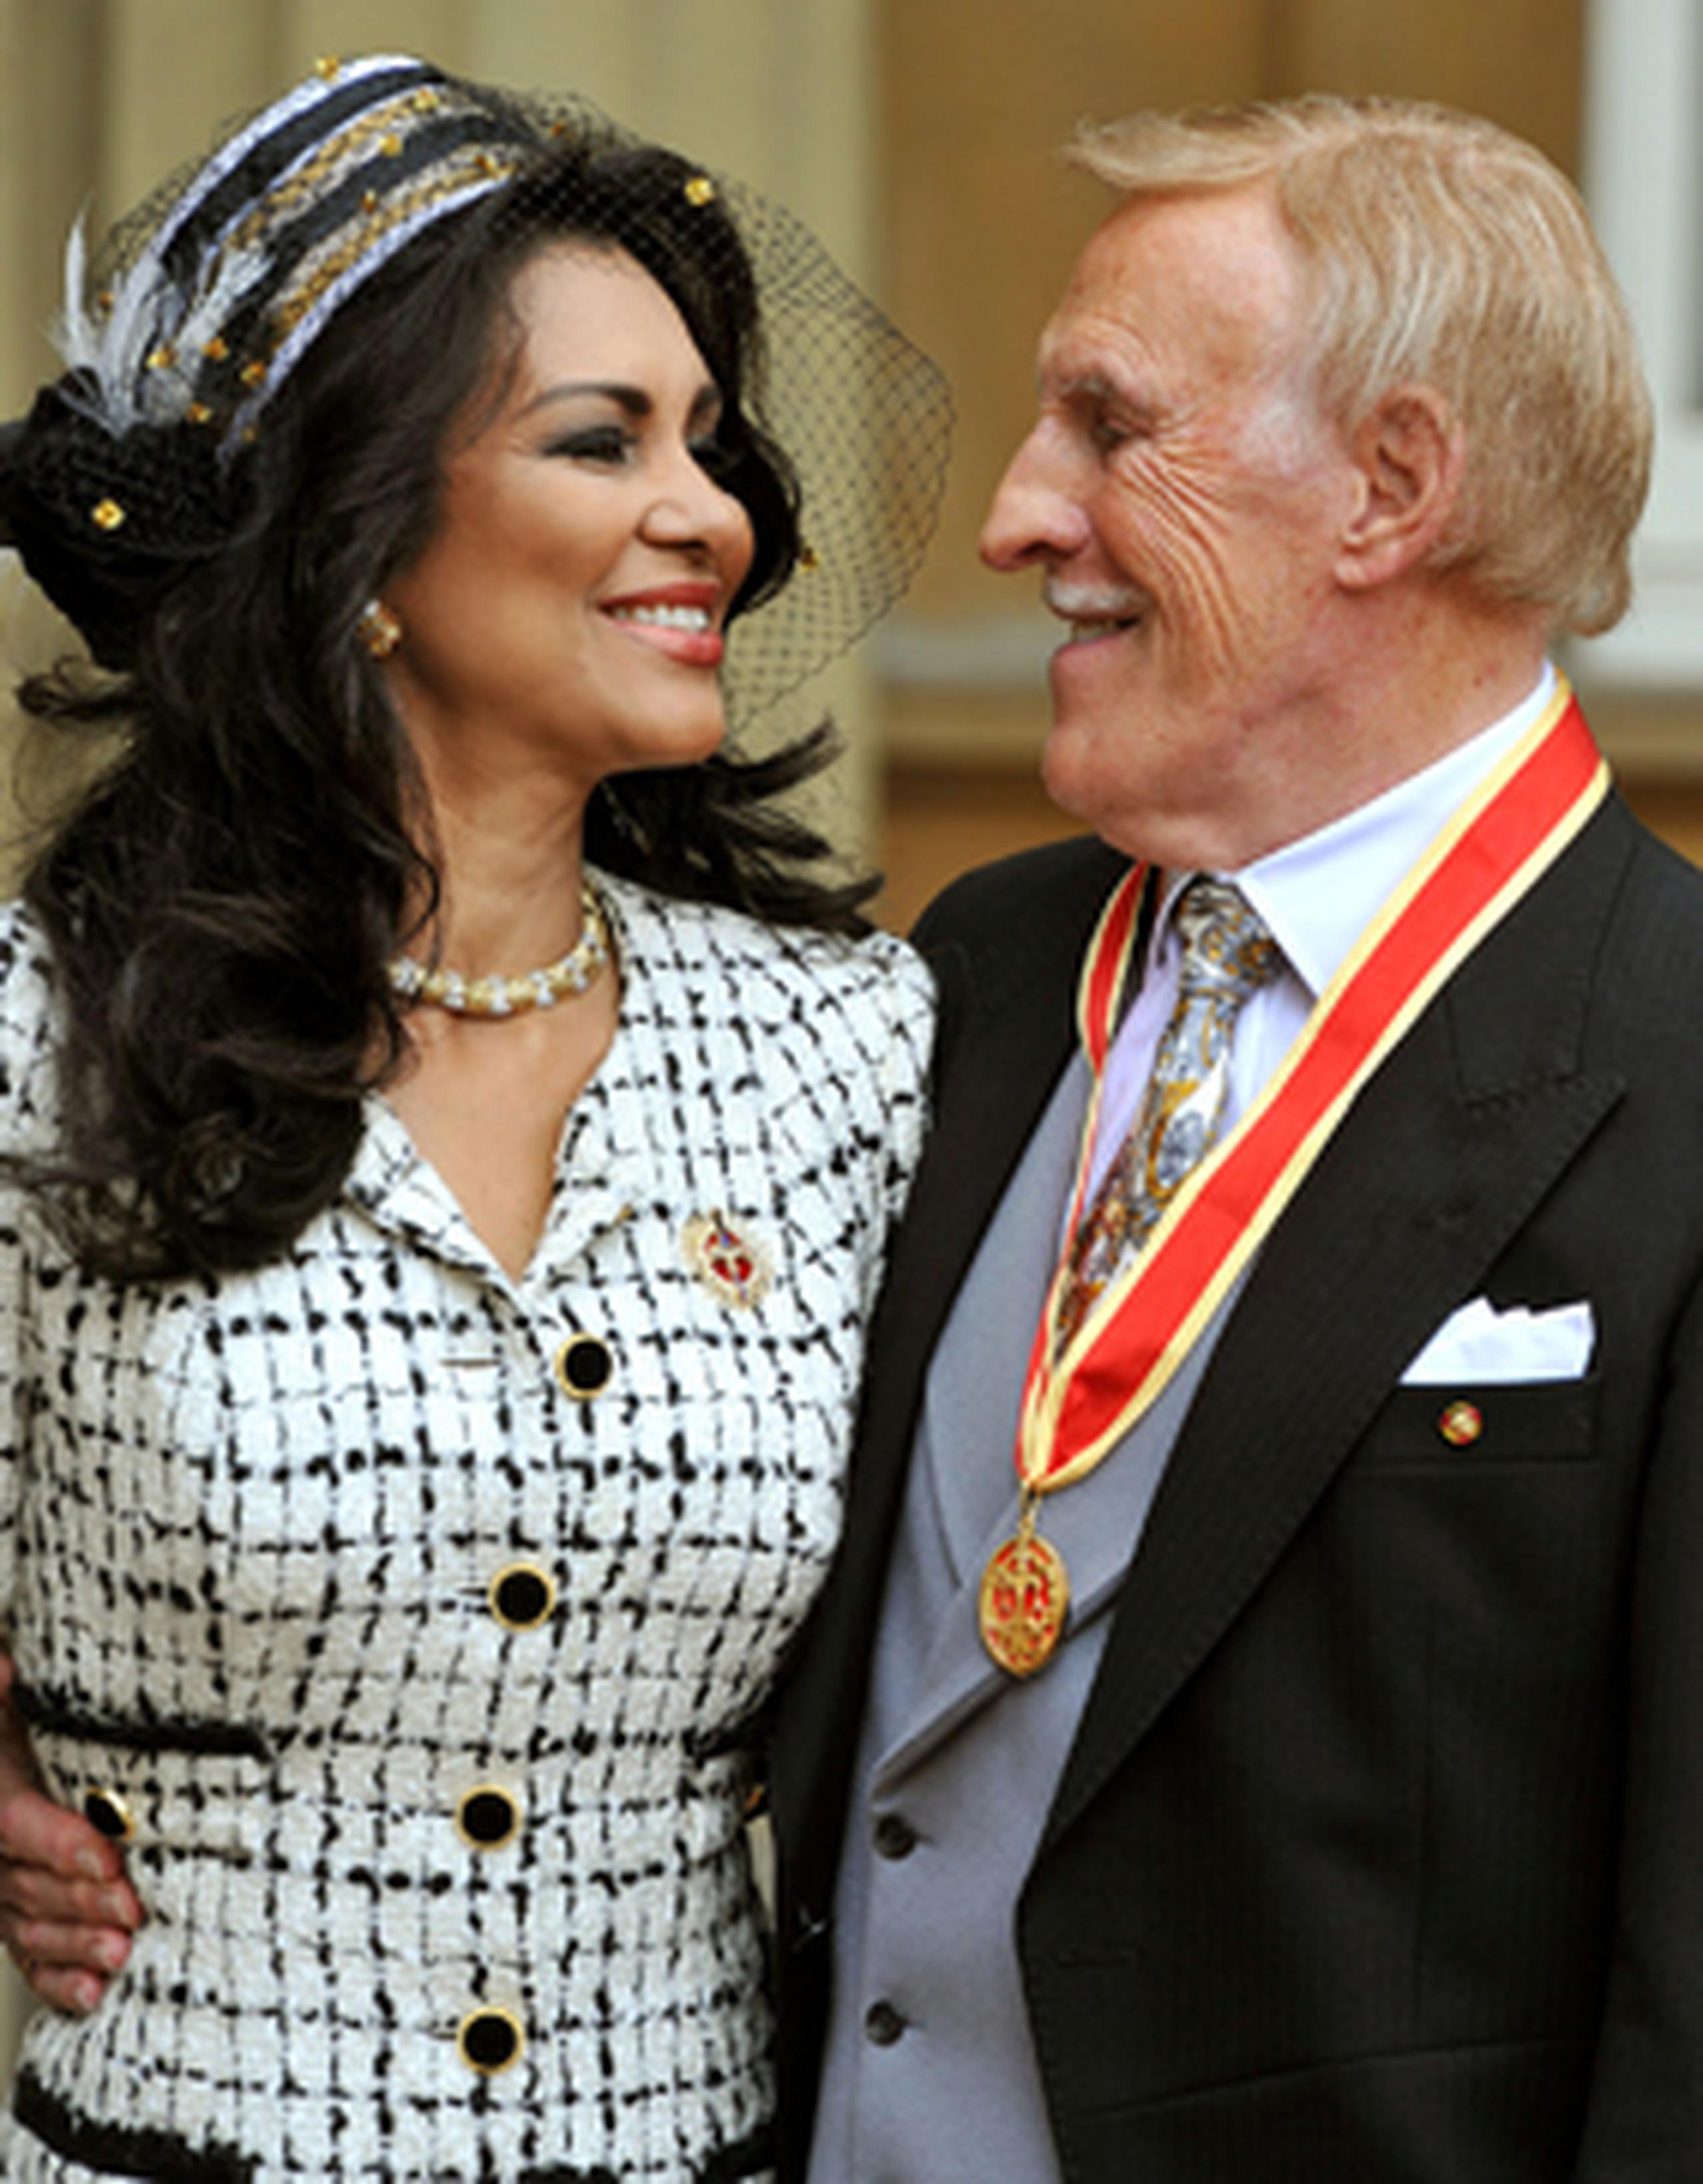 Merced es la única boricua ganadora de la corona de Miss Mundo, lo que consiguió en 1975. Forsyth es un veterano de la televisión británica, concentrado en producciones dirigidas al entretenimiento de la familia. (PA Wire PRESS ASSOCIATION )